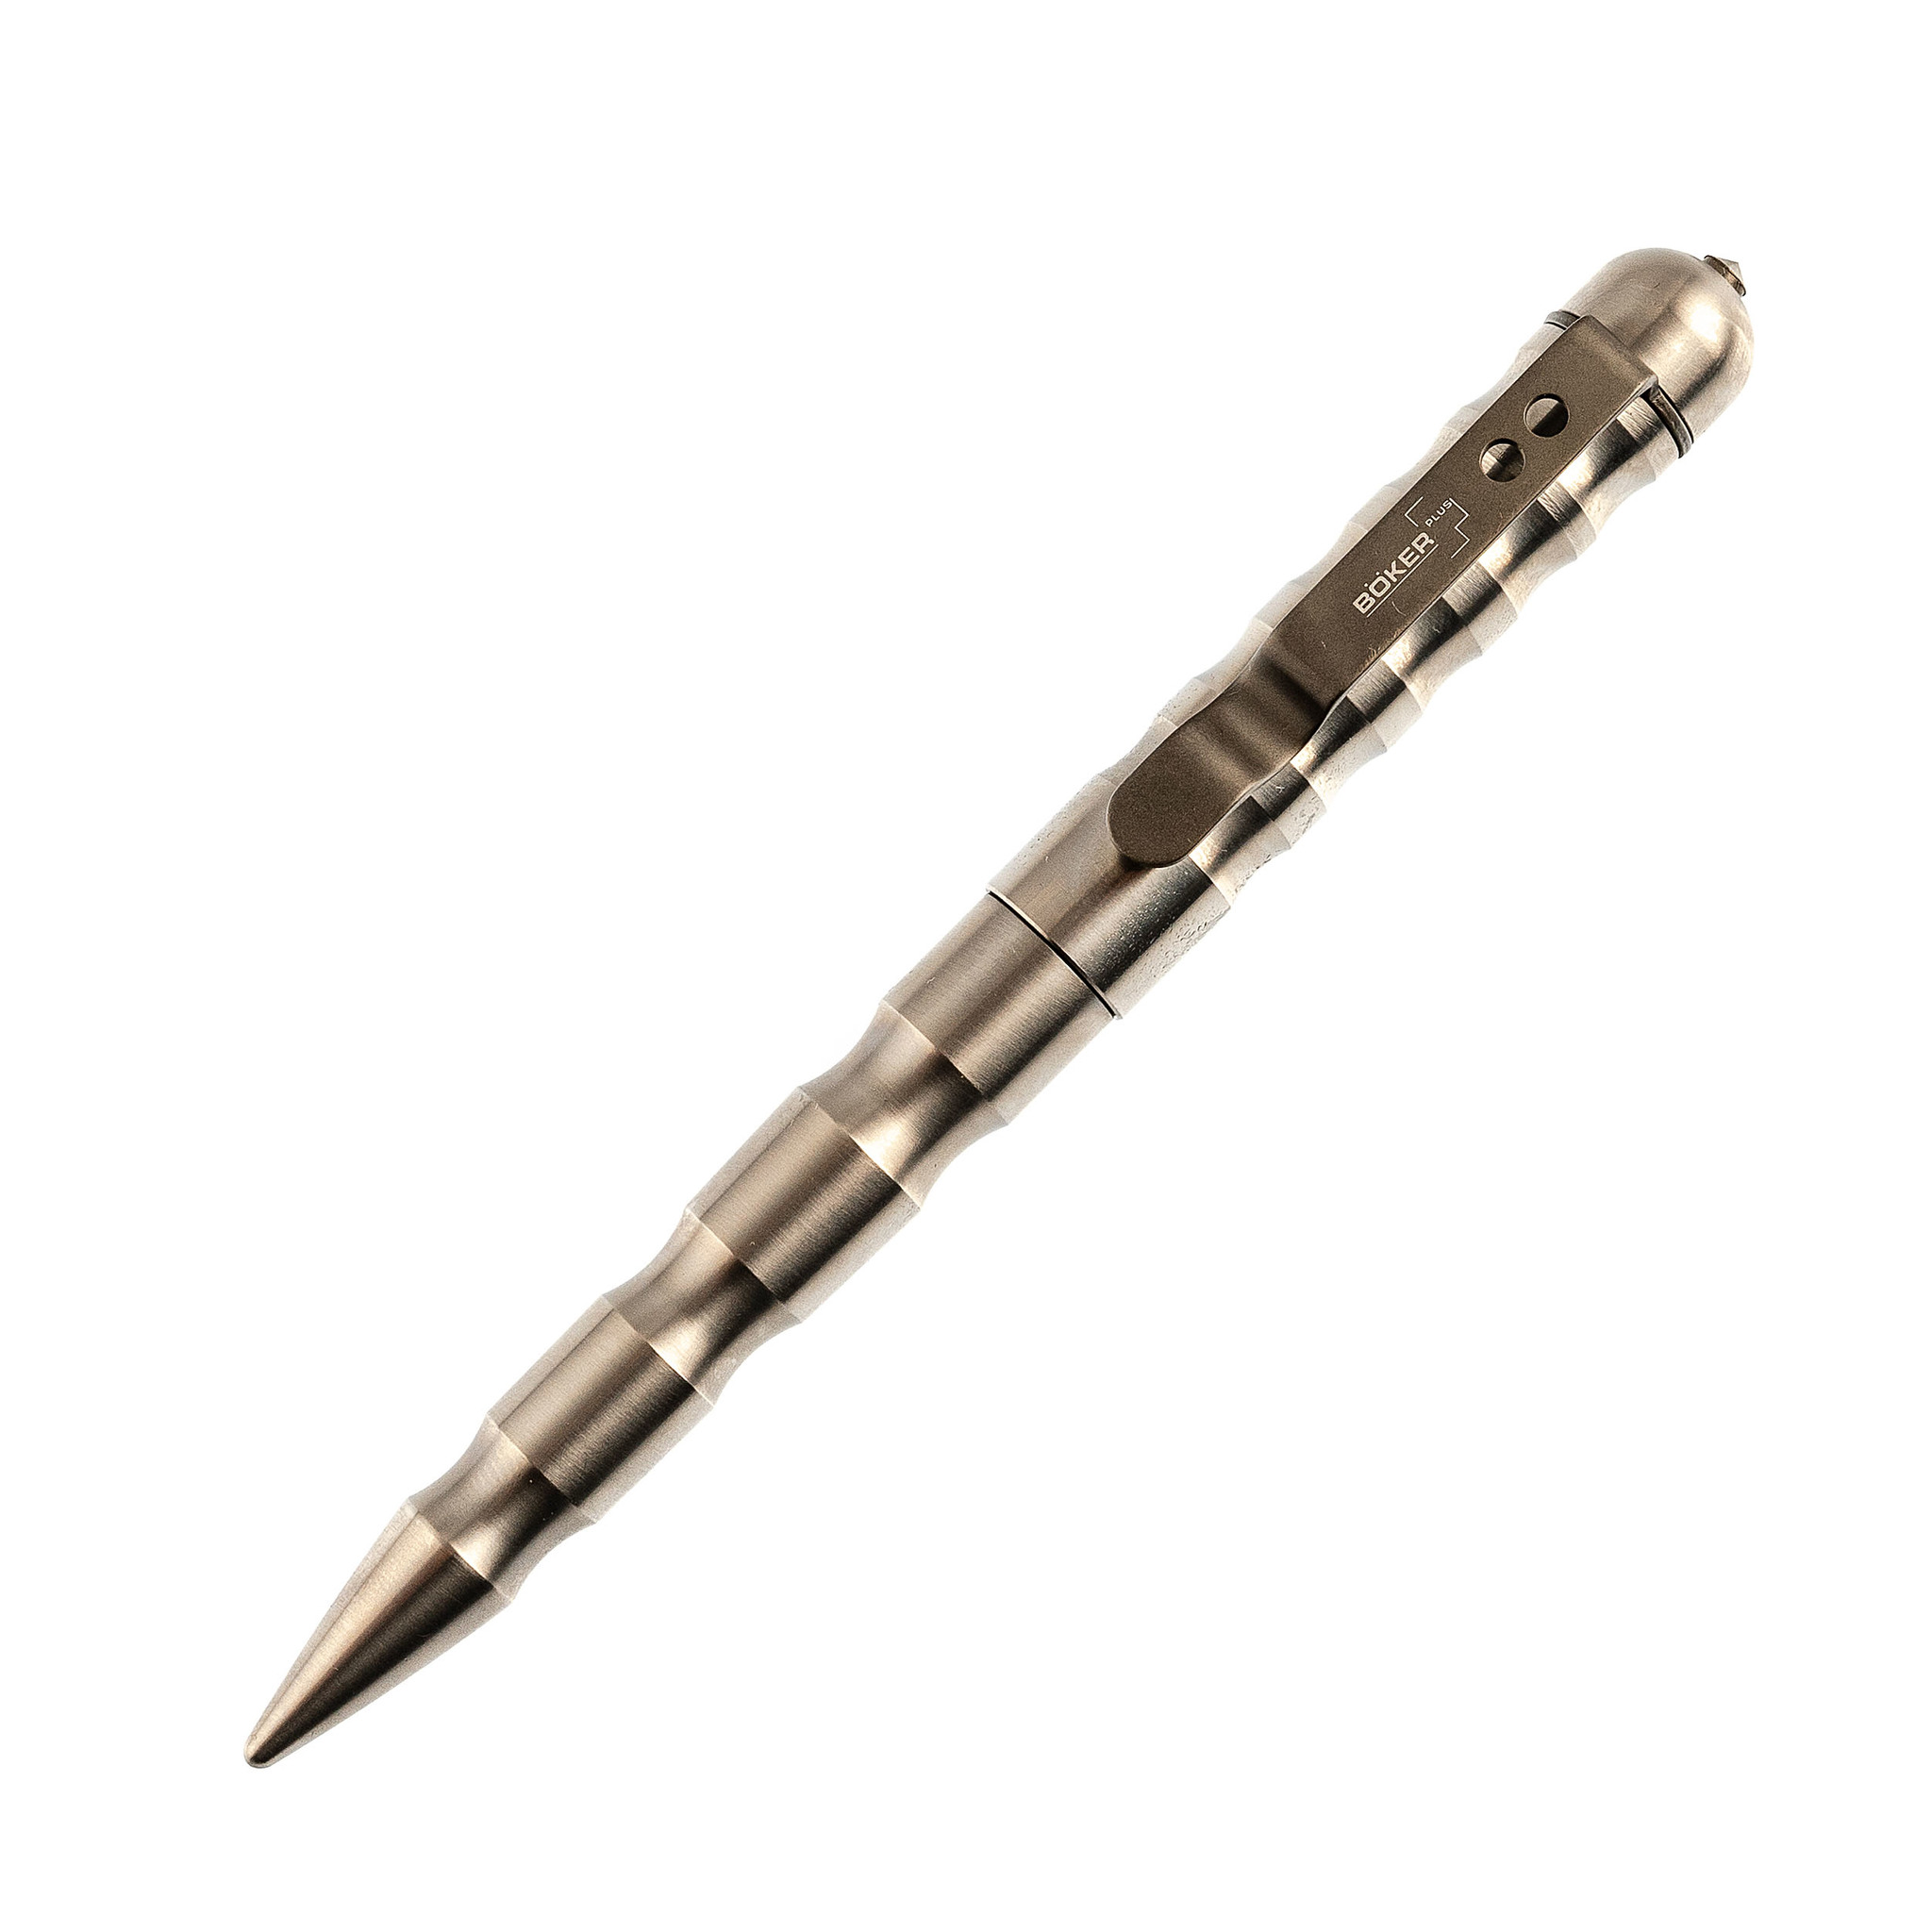 Тактическая ручка MPP Titanium (Multi Purpose Pen Titan), Boker Plus 09BO066, серебристая